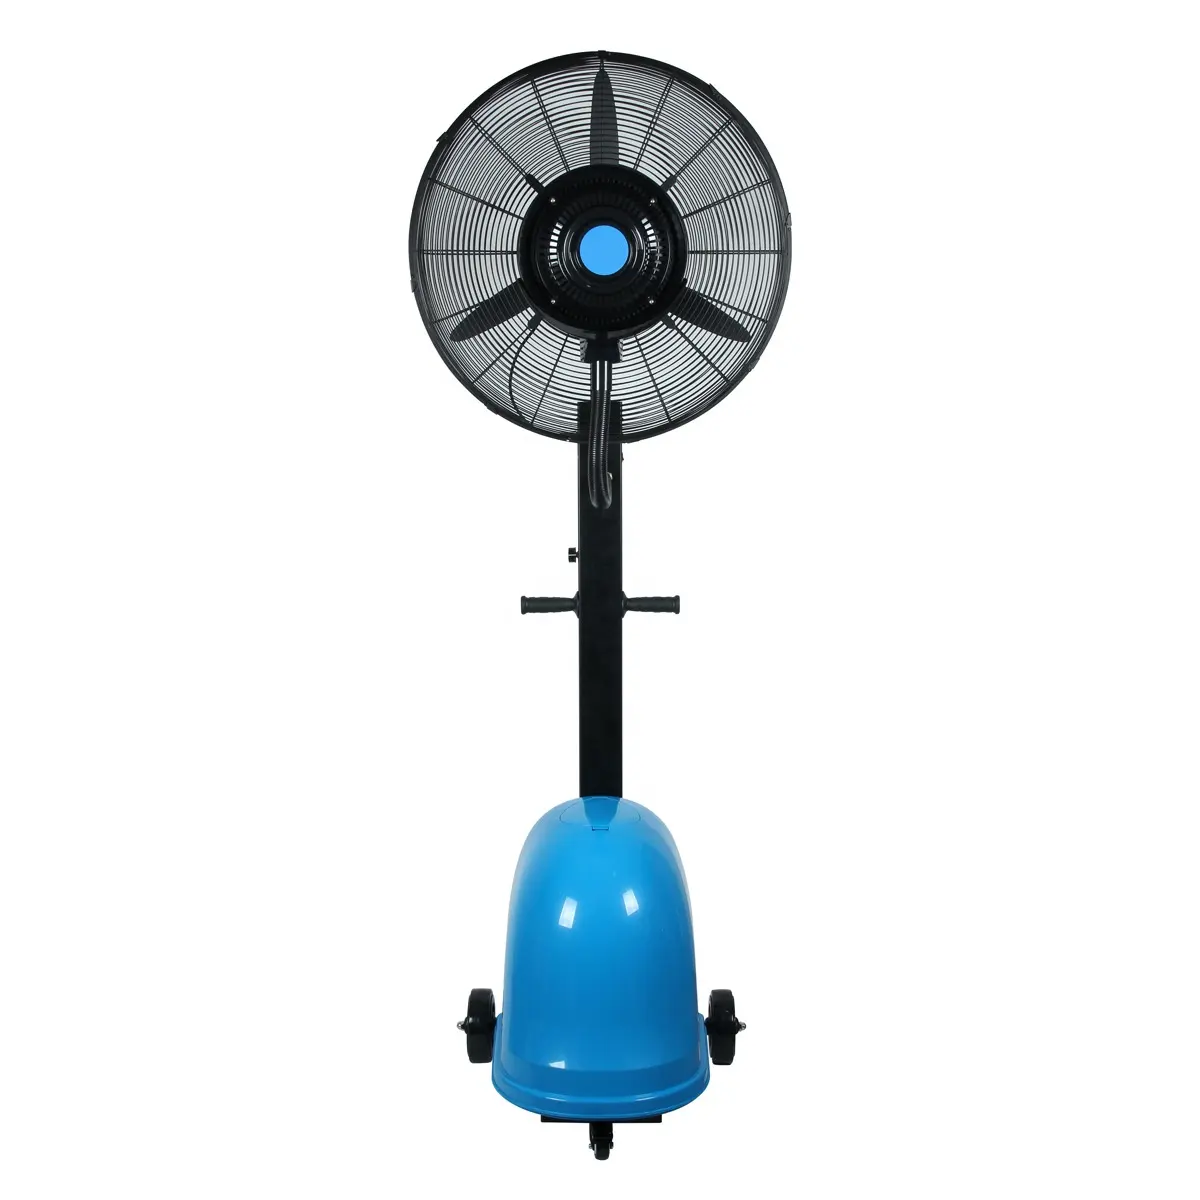 Охлаждение воды вентилятором. Вентилятор уличный Manya DB-26cf01. Вентилятор с увлажнителем Mist Fan 26m. Вентилятор с увлажнителем Mist-Fan om FS 01. Вентилятор Mist FS-300c.